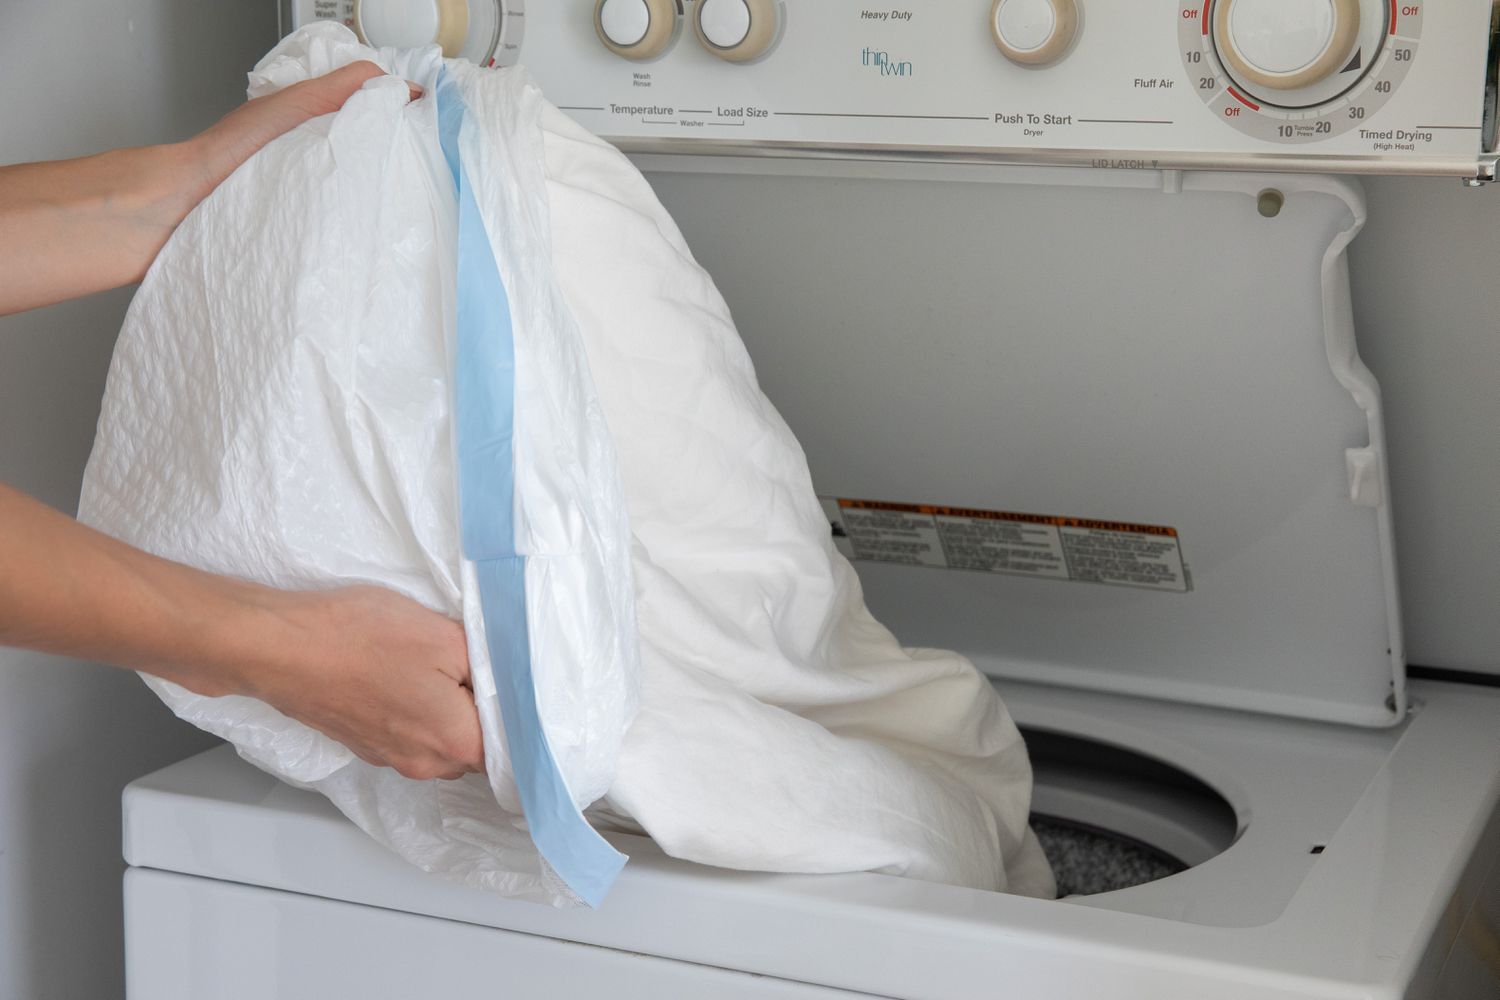 Ropa infestada de chinches en una bolsa de basura de plástico vertida en la lavadora